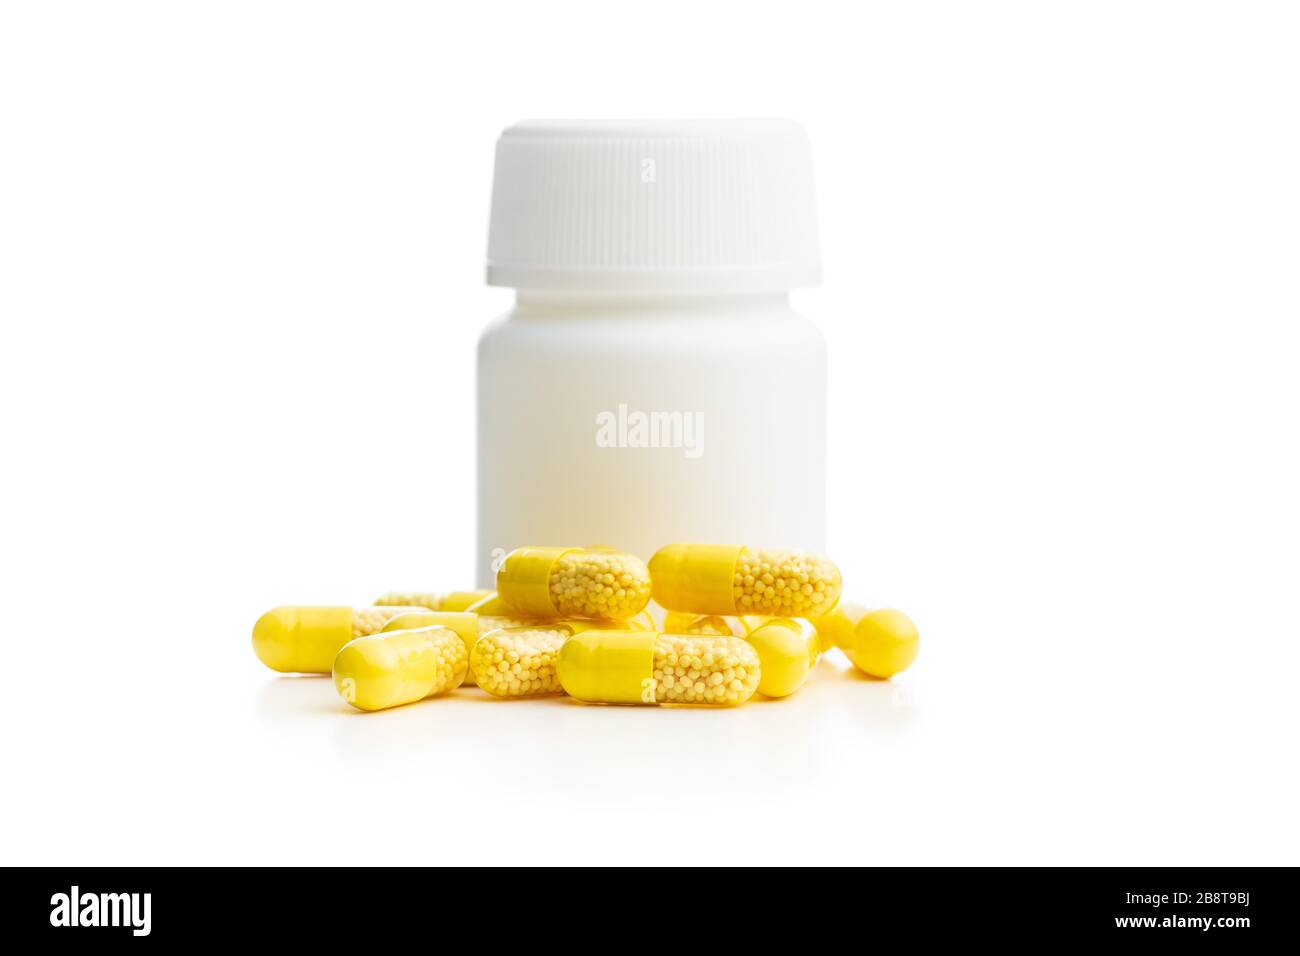 Capsule vitaminiche. Pillole di vitamina C e flacone di pillola bianco isolato su sfondo bianco. Foto Stock